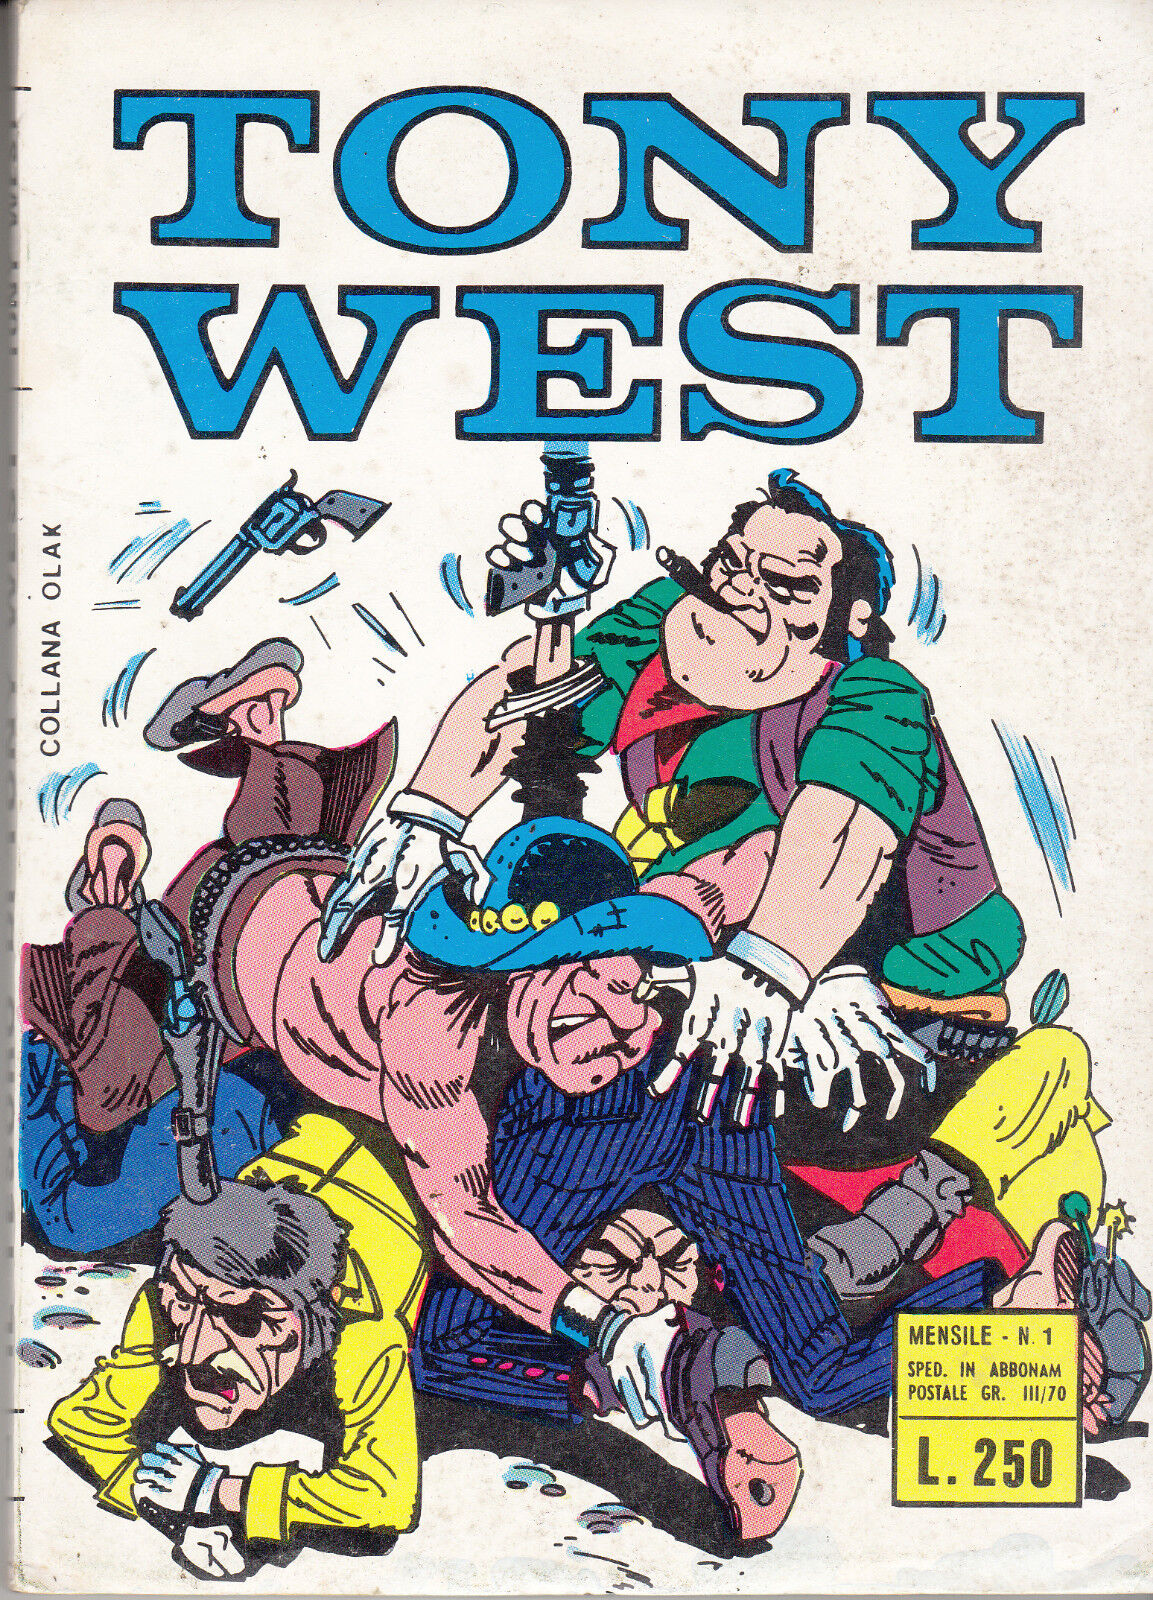 Fumetti Italiani Vintage: Tony West